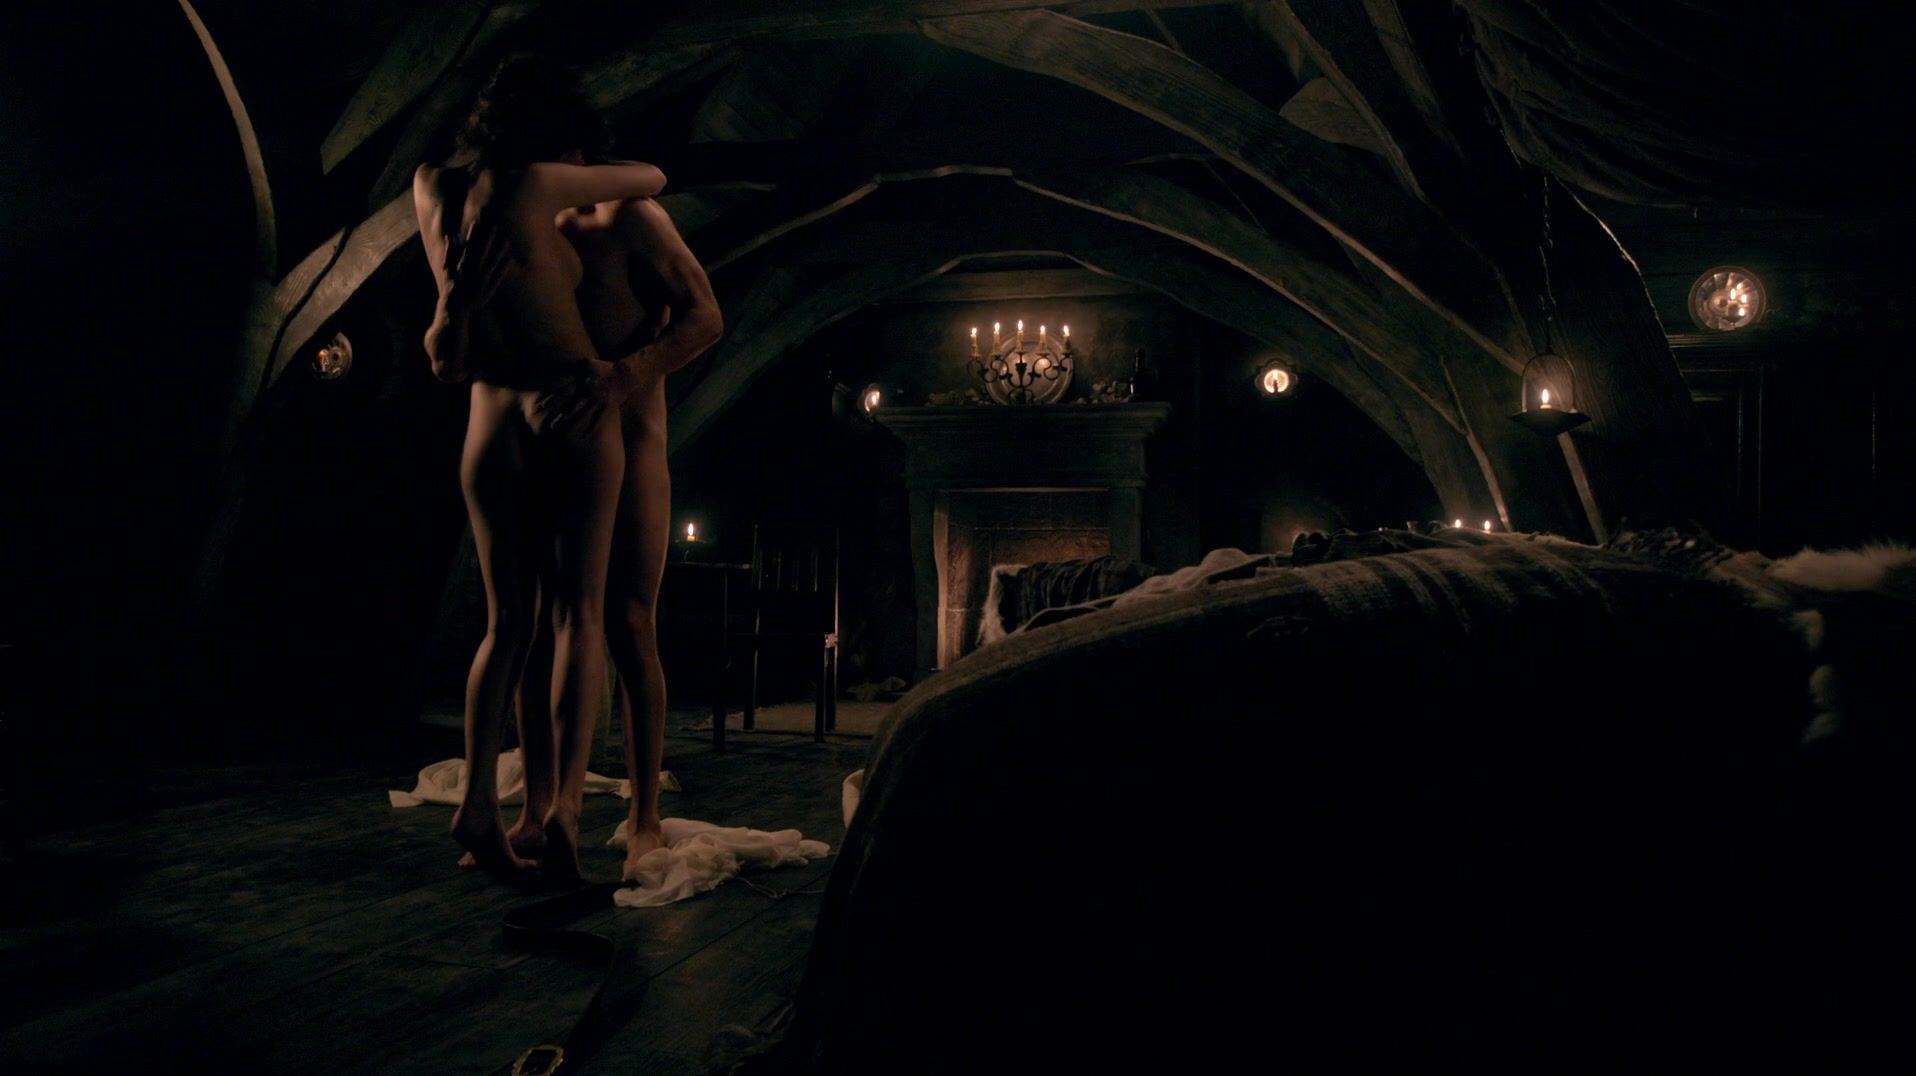 Rough Fucking Sex scene of naked Caitriona Balfe | TV show "Outlander" KissAnime